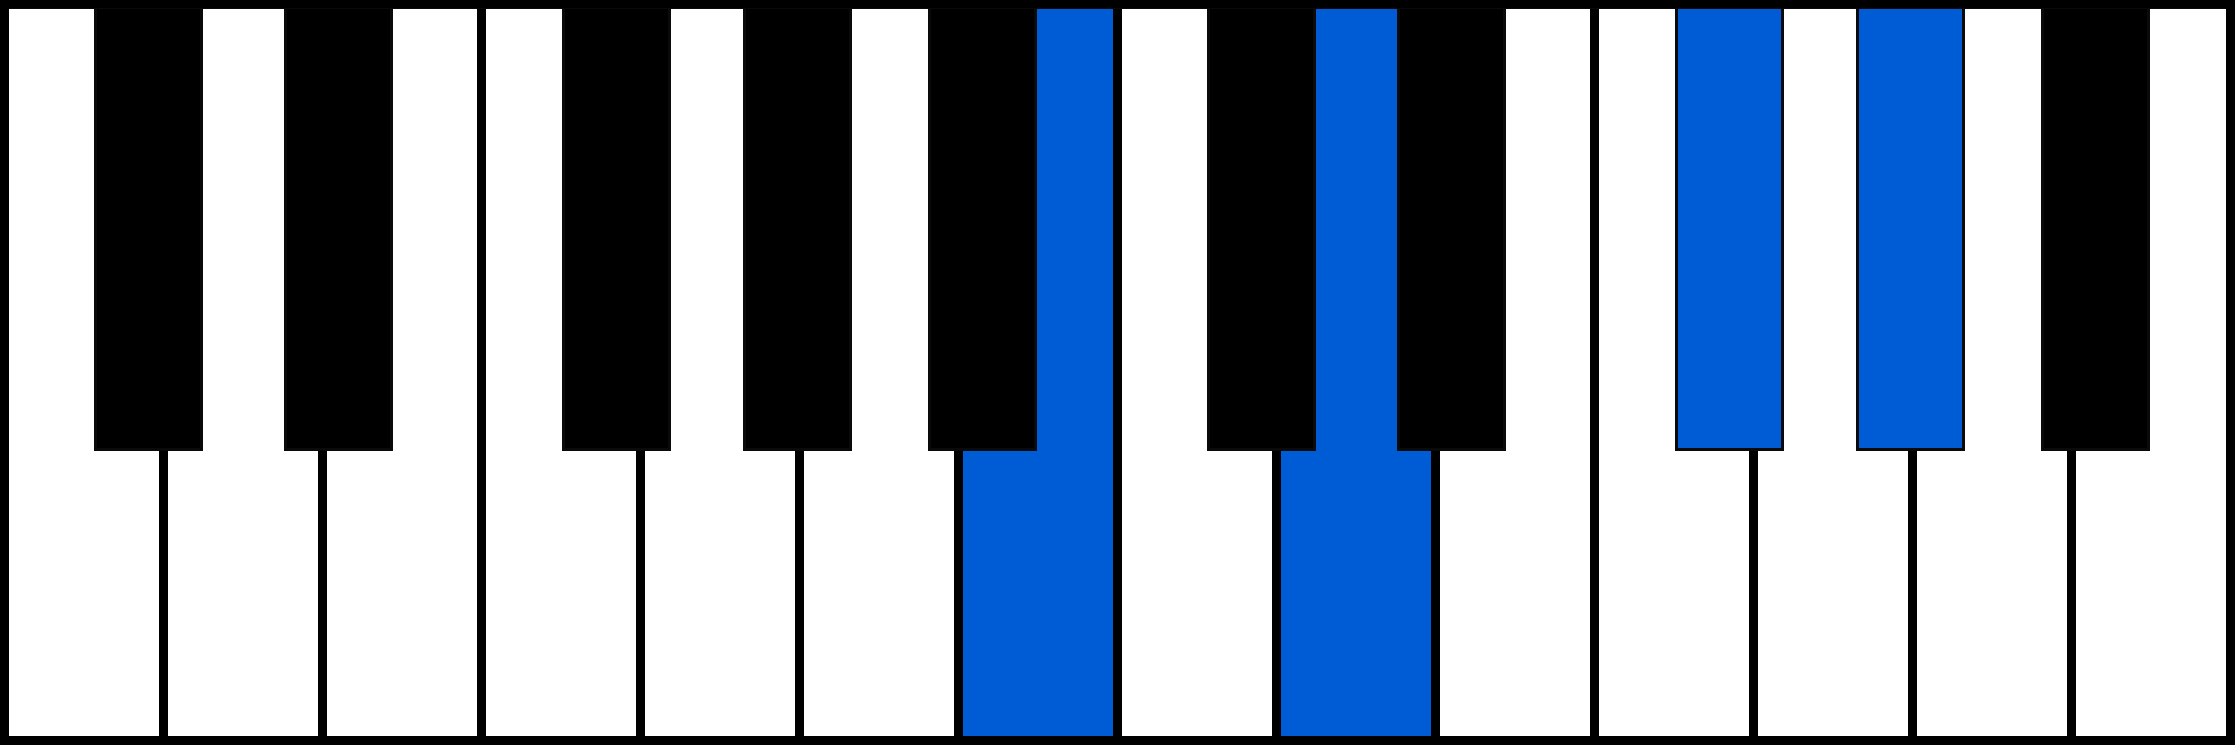 Hm6 piano chord